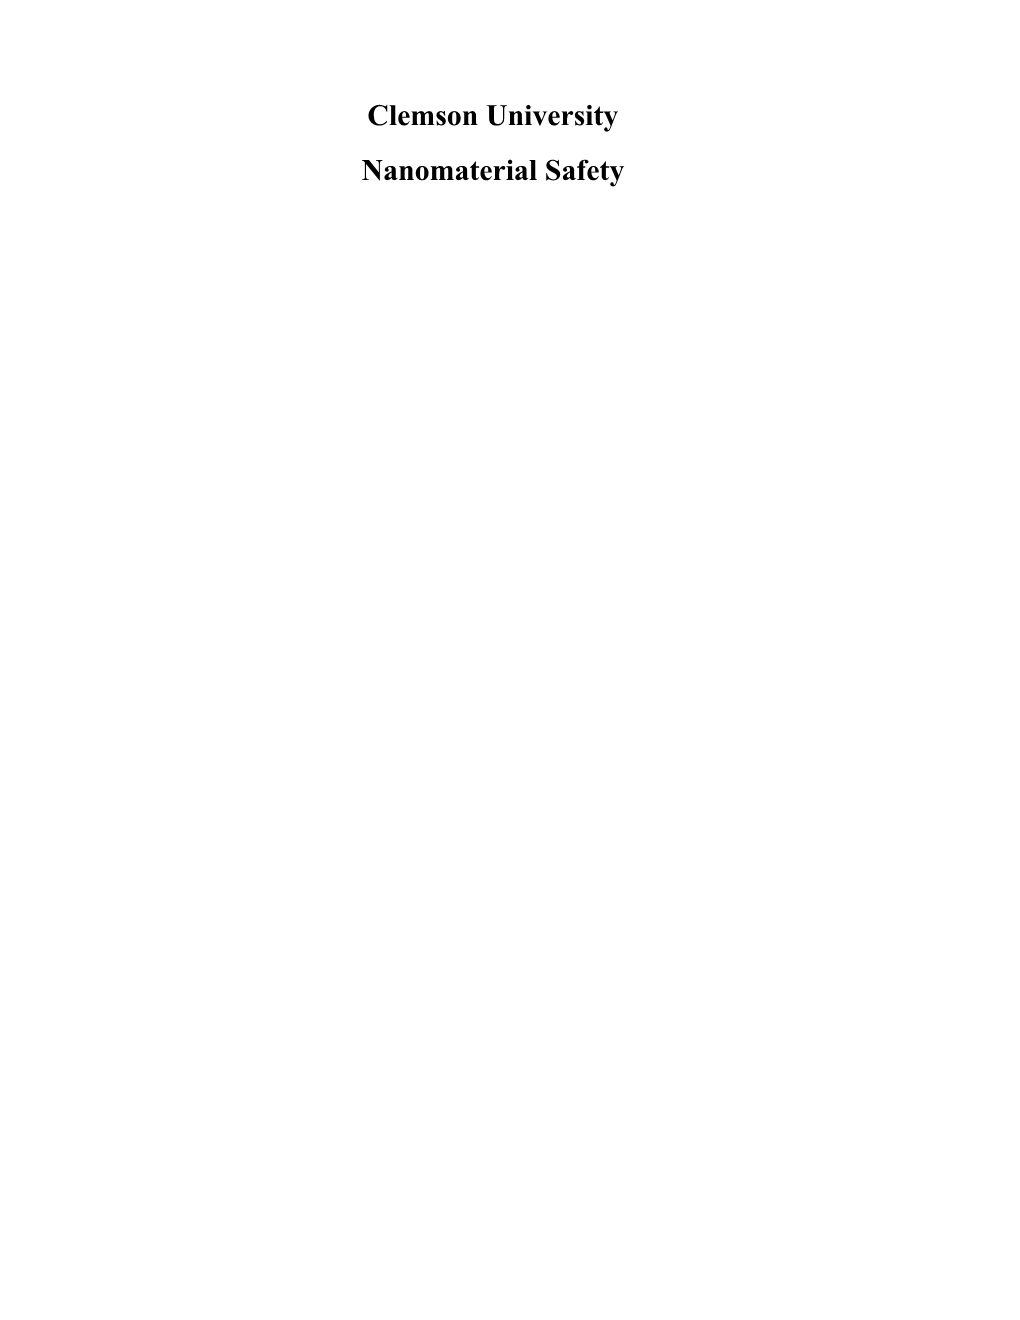 Ch 17 - CU Nanotech Manual 2007